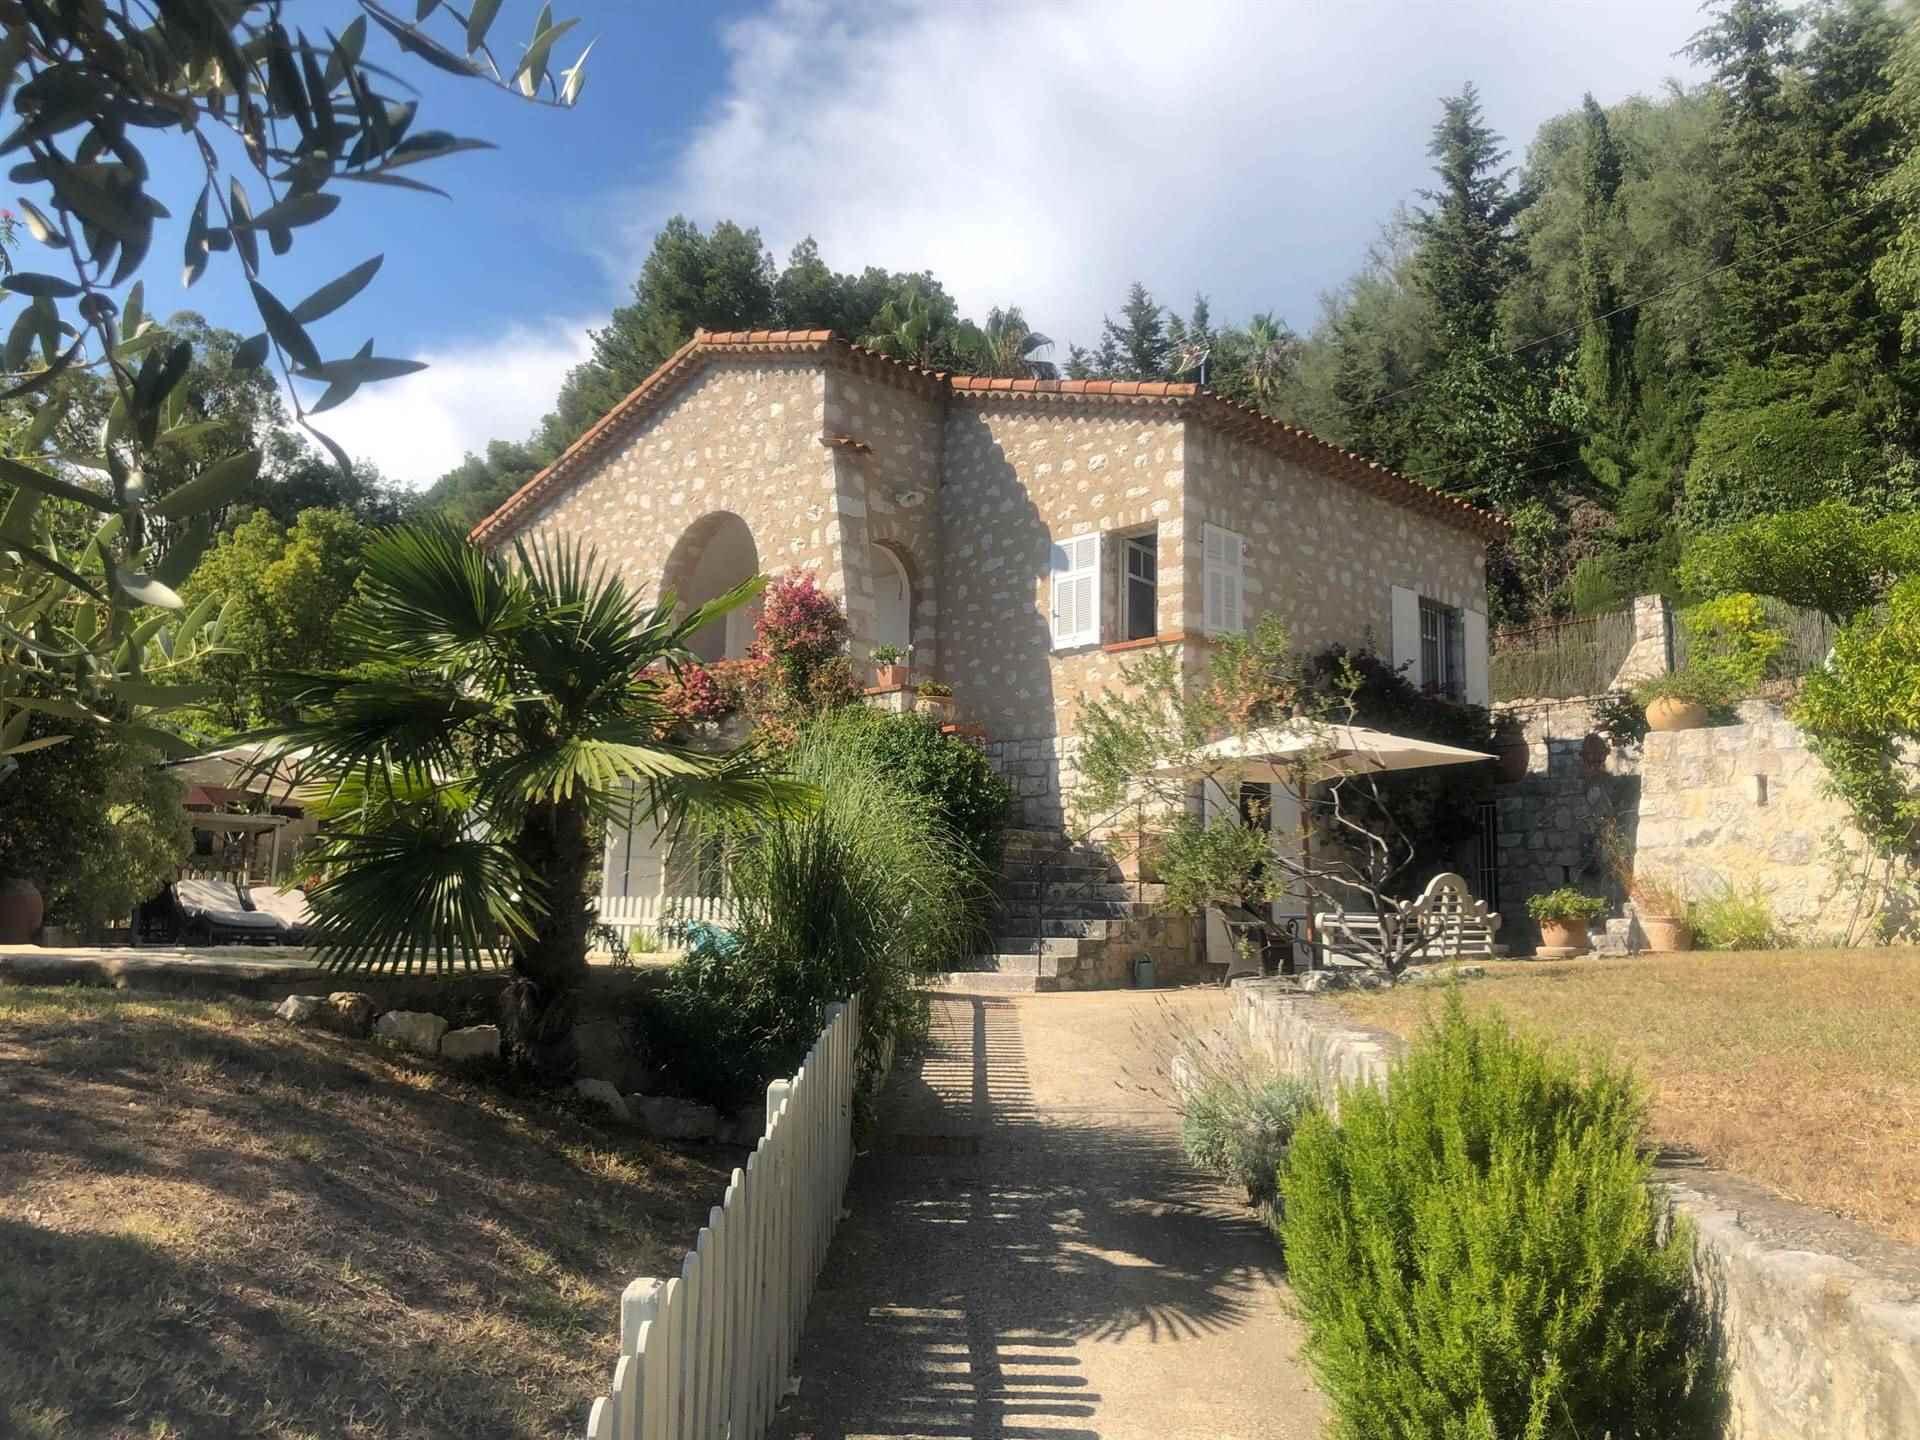 Sulle colline di Saint Paul de Vence magnifica villa provenzale in pietra con giardino e piscina a 10 mn dal centro storico, immersa nella quiete e i 